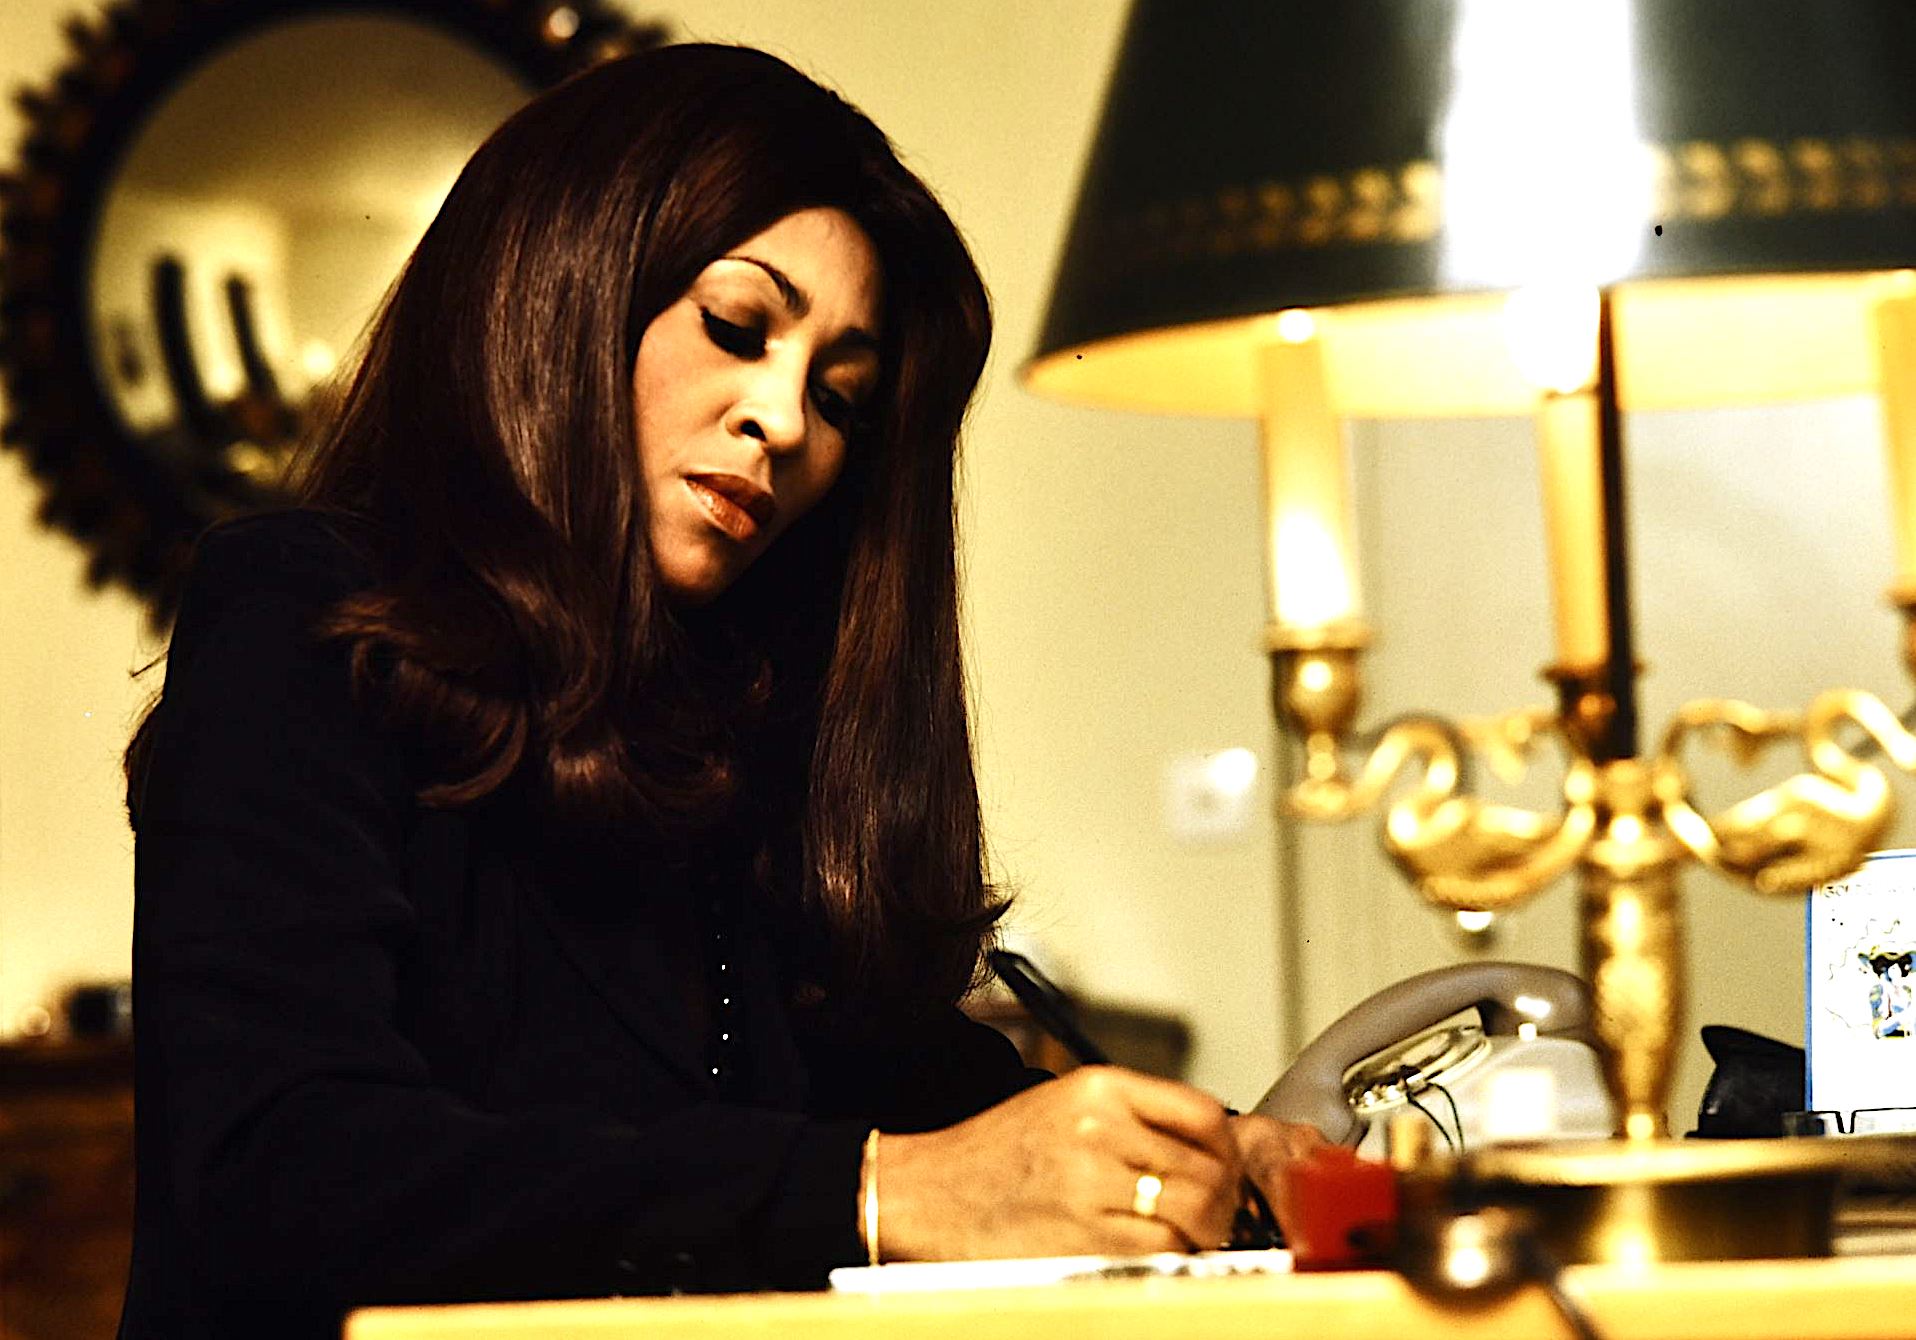 Tina im Hotel: Autogramme schreiben gehört zur täglichen Routine